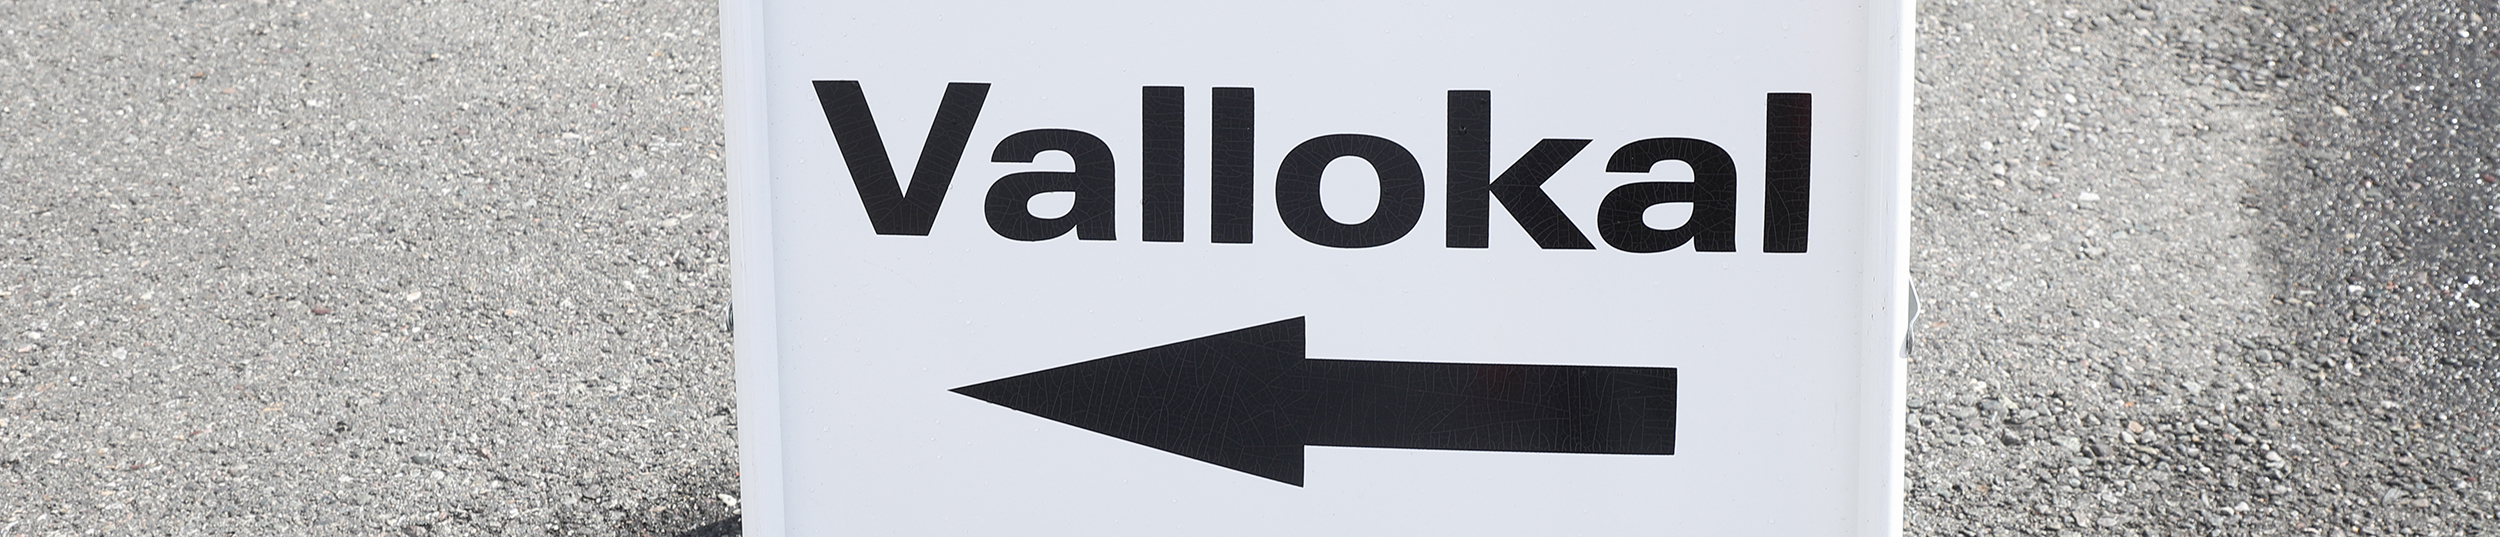 Gatupratare med ordet vallokal och en pil som visar riktningen till lokal där allmänna val hålls.